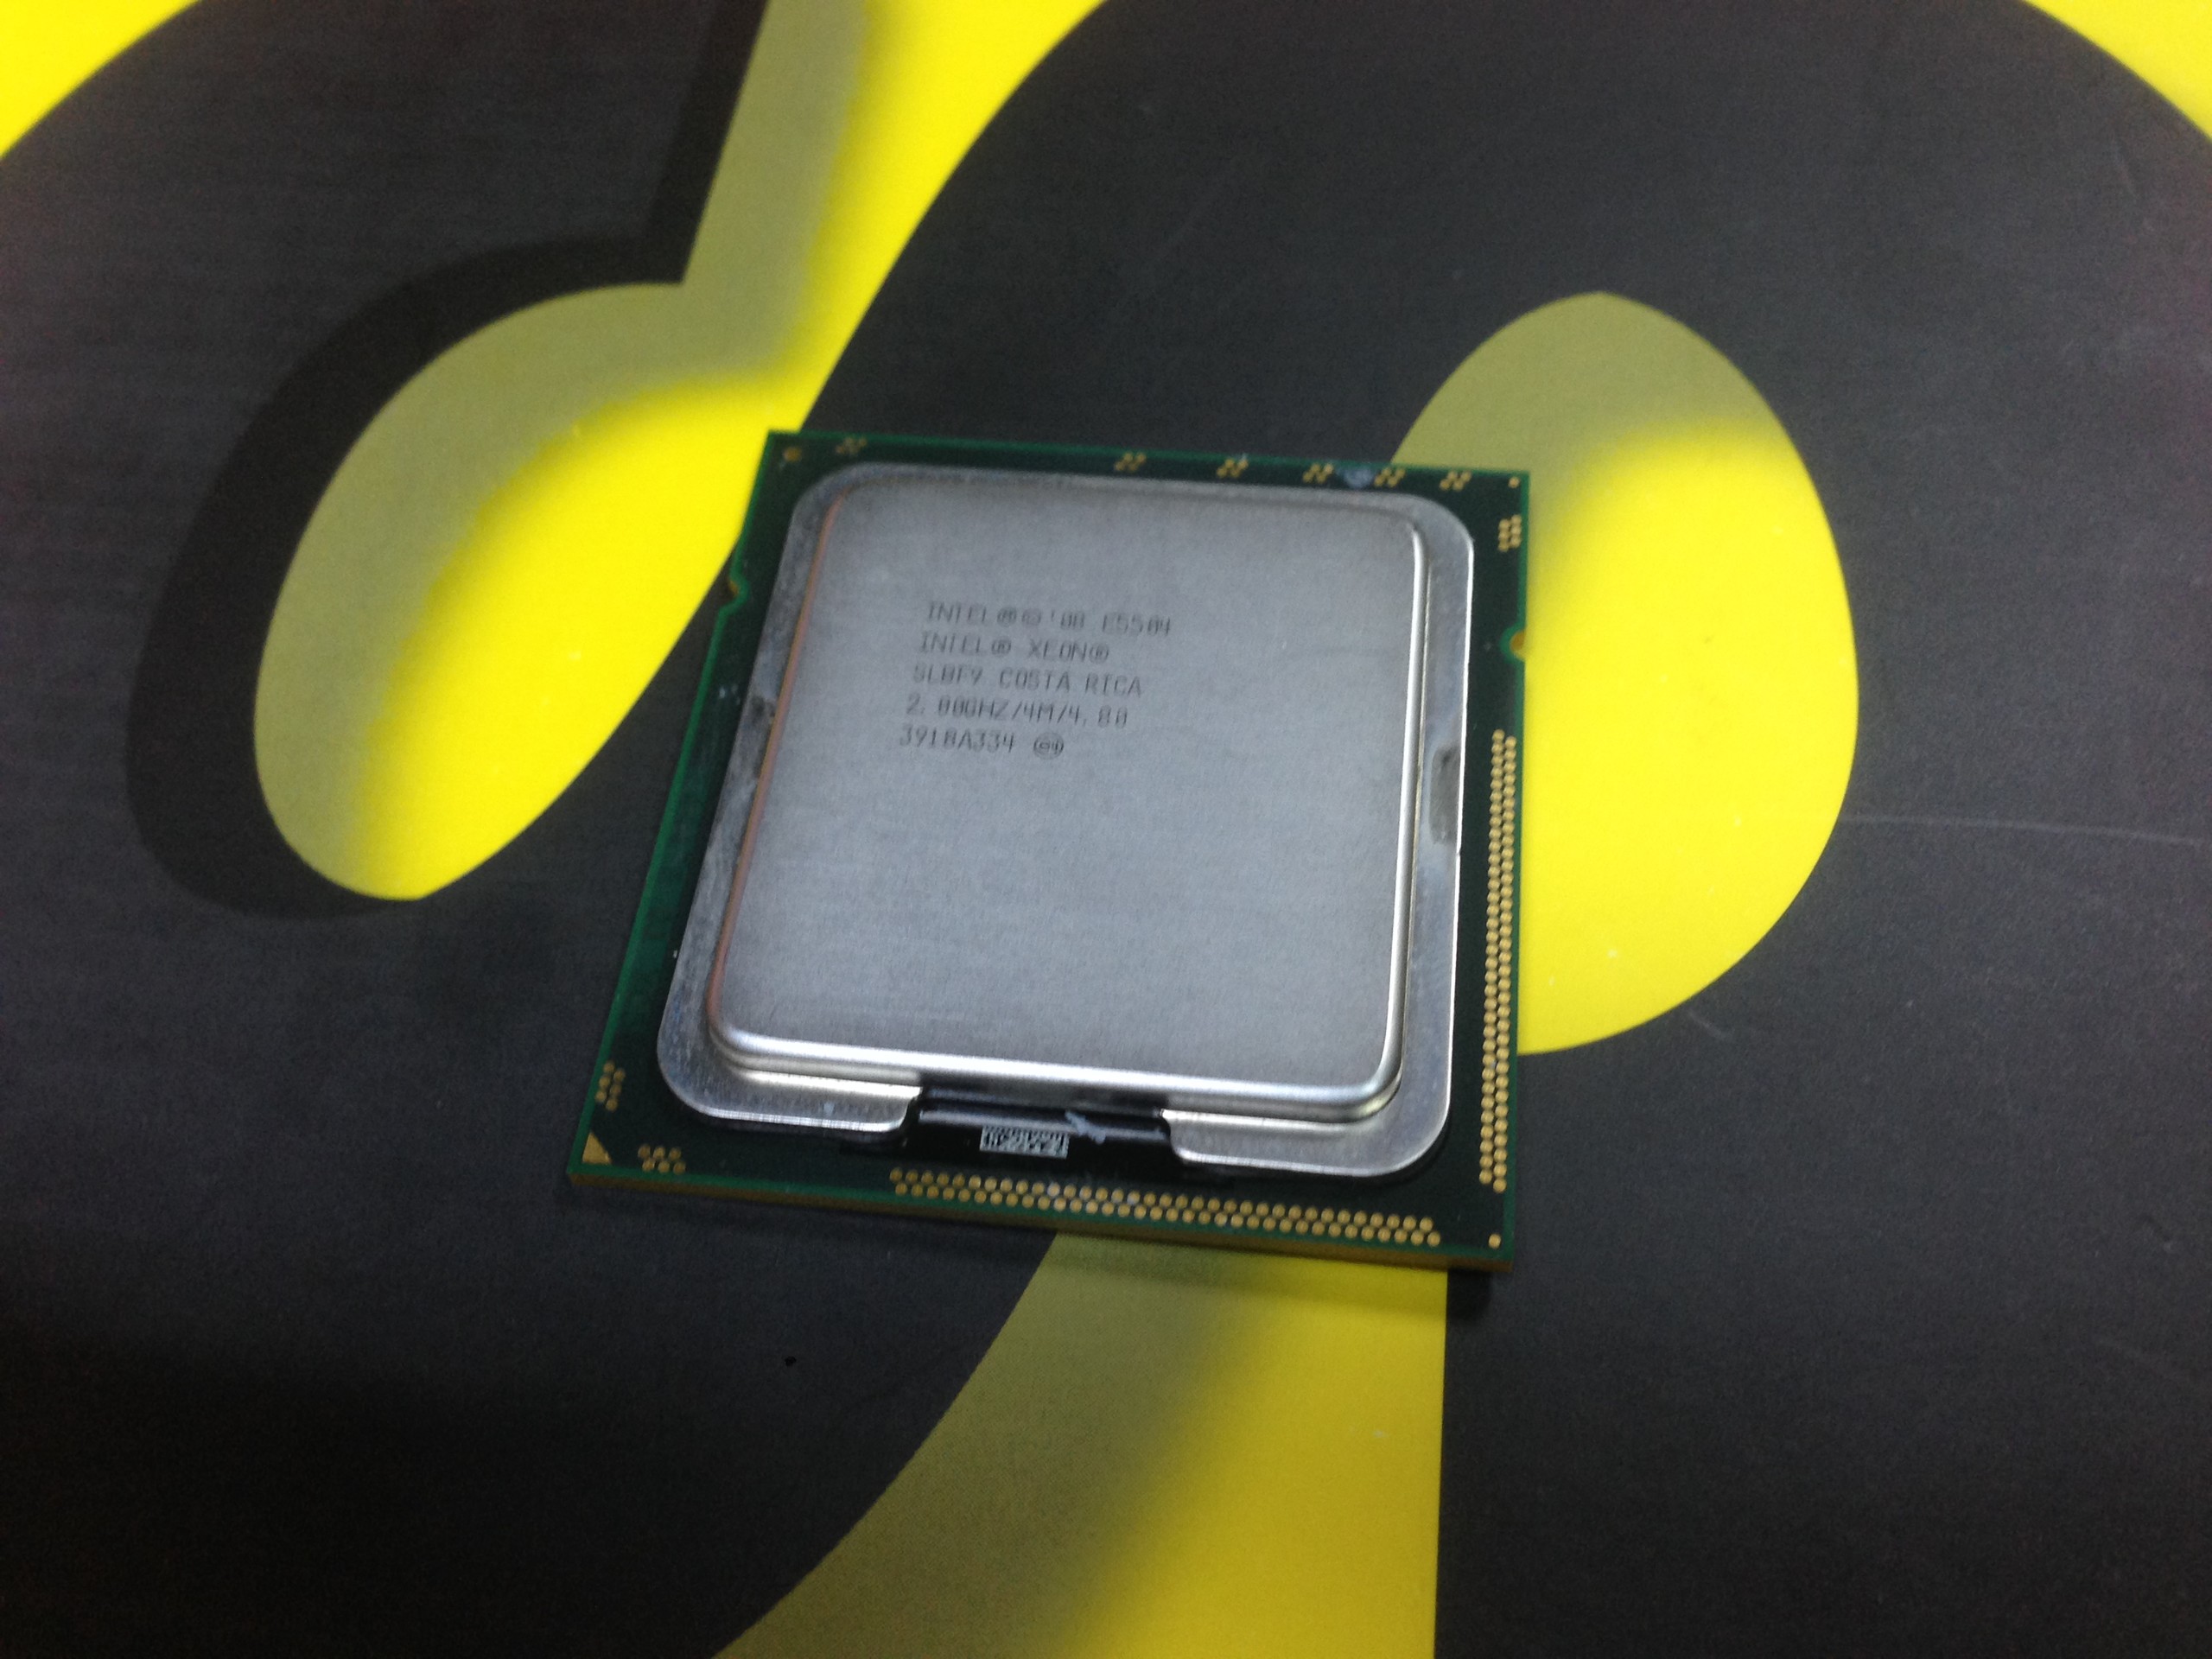 Intel® Xeon® Processor E5504 4M Cache, 2.00 GHz 99TL...